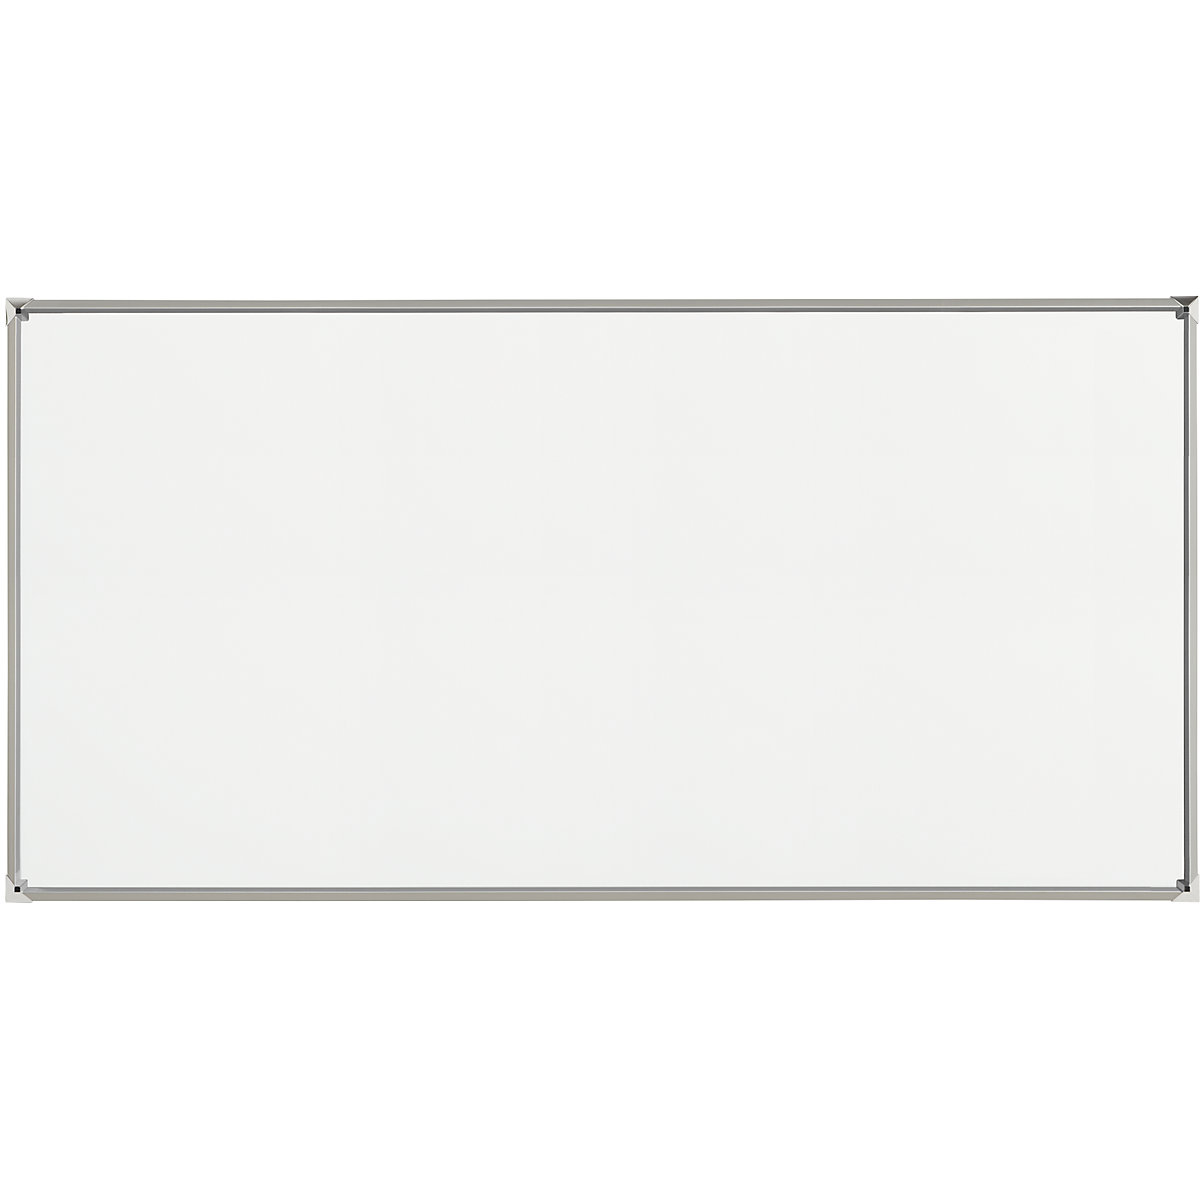 EUROKRAFTpro – Tablica biała z designerską ramą, blacha stalowa, emaliowana, szer. x wys. 2000 x 1000 mm, rama srebrna